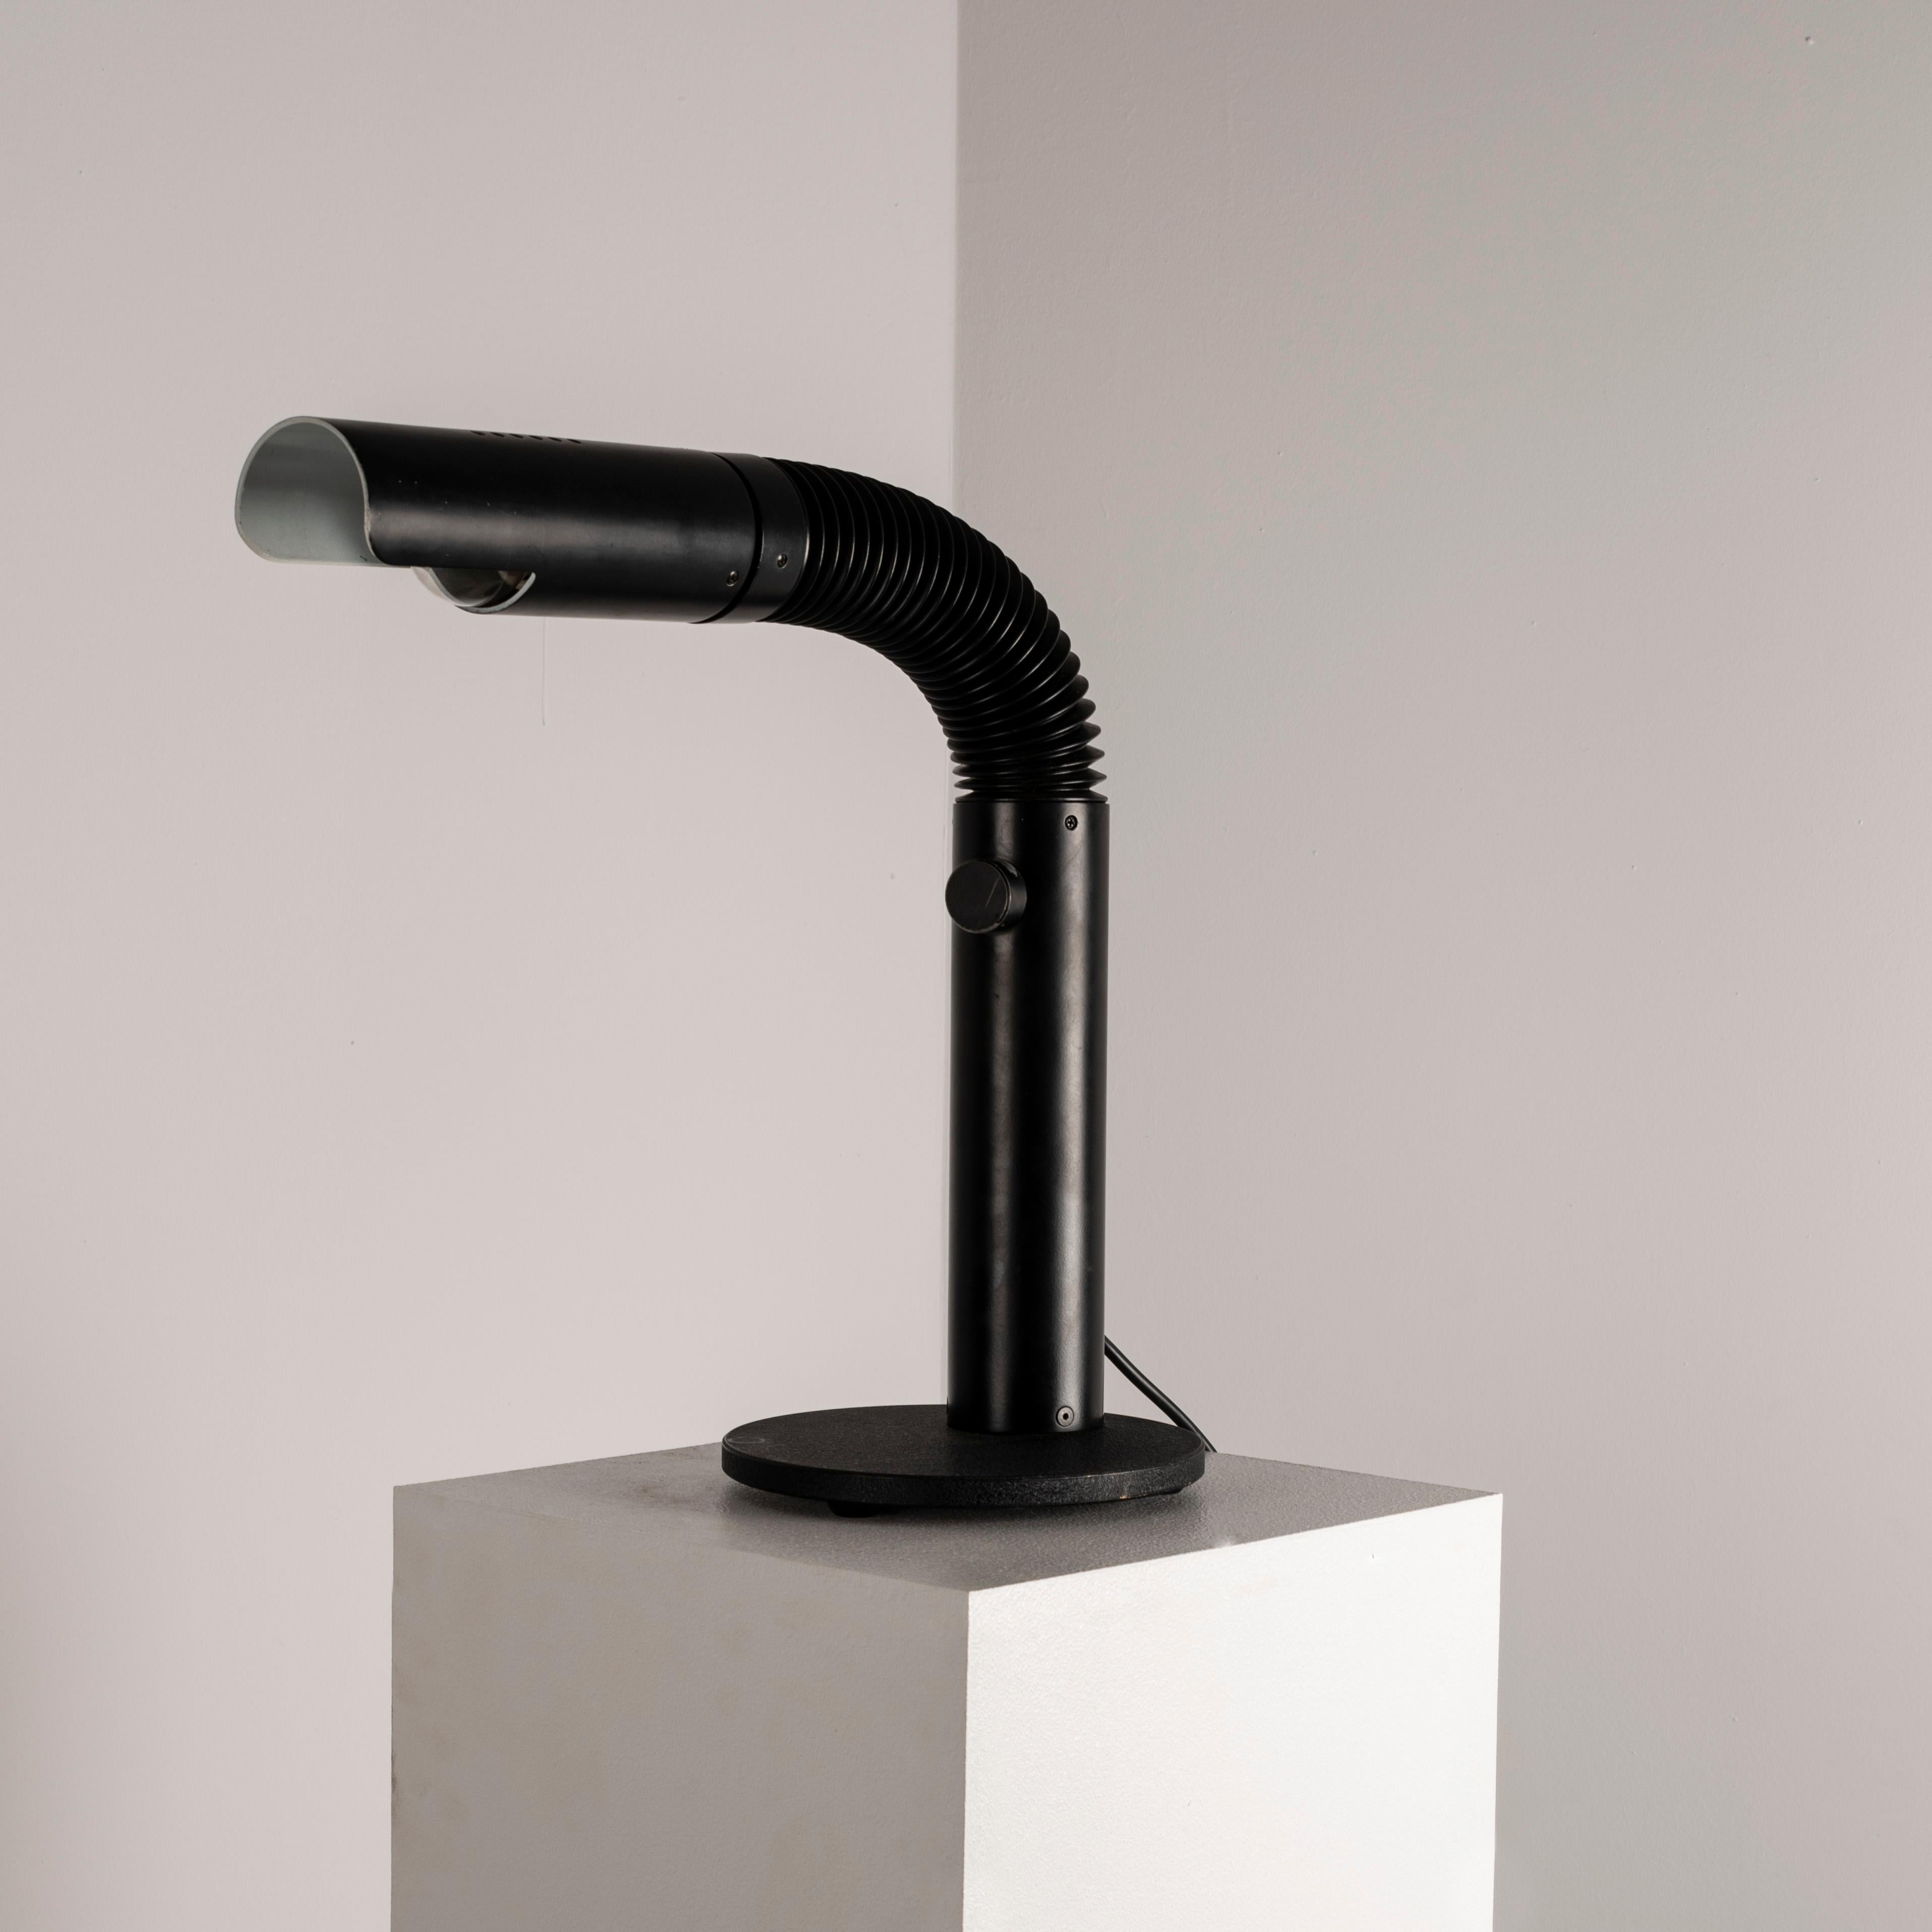 En investissant dans cette lampe de table espagnole articulée à la manière de Gino Sarfatti, vous aurez l'occasion d'apporter une touche de sophistication et de fonctionnalité moderne du milieu du siècle à votre espace. Inspirée des designs